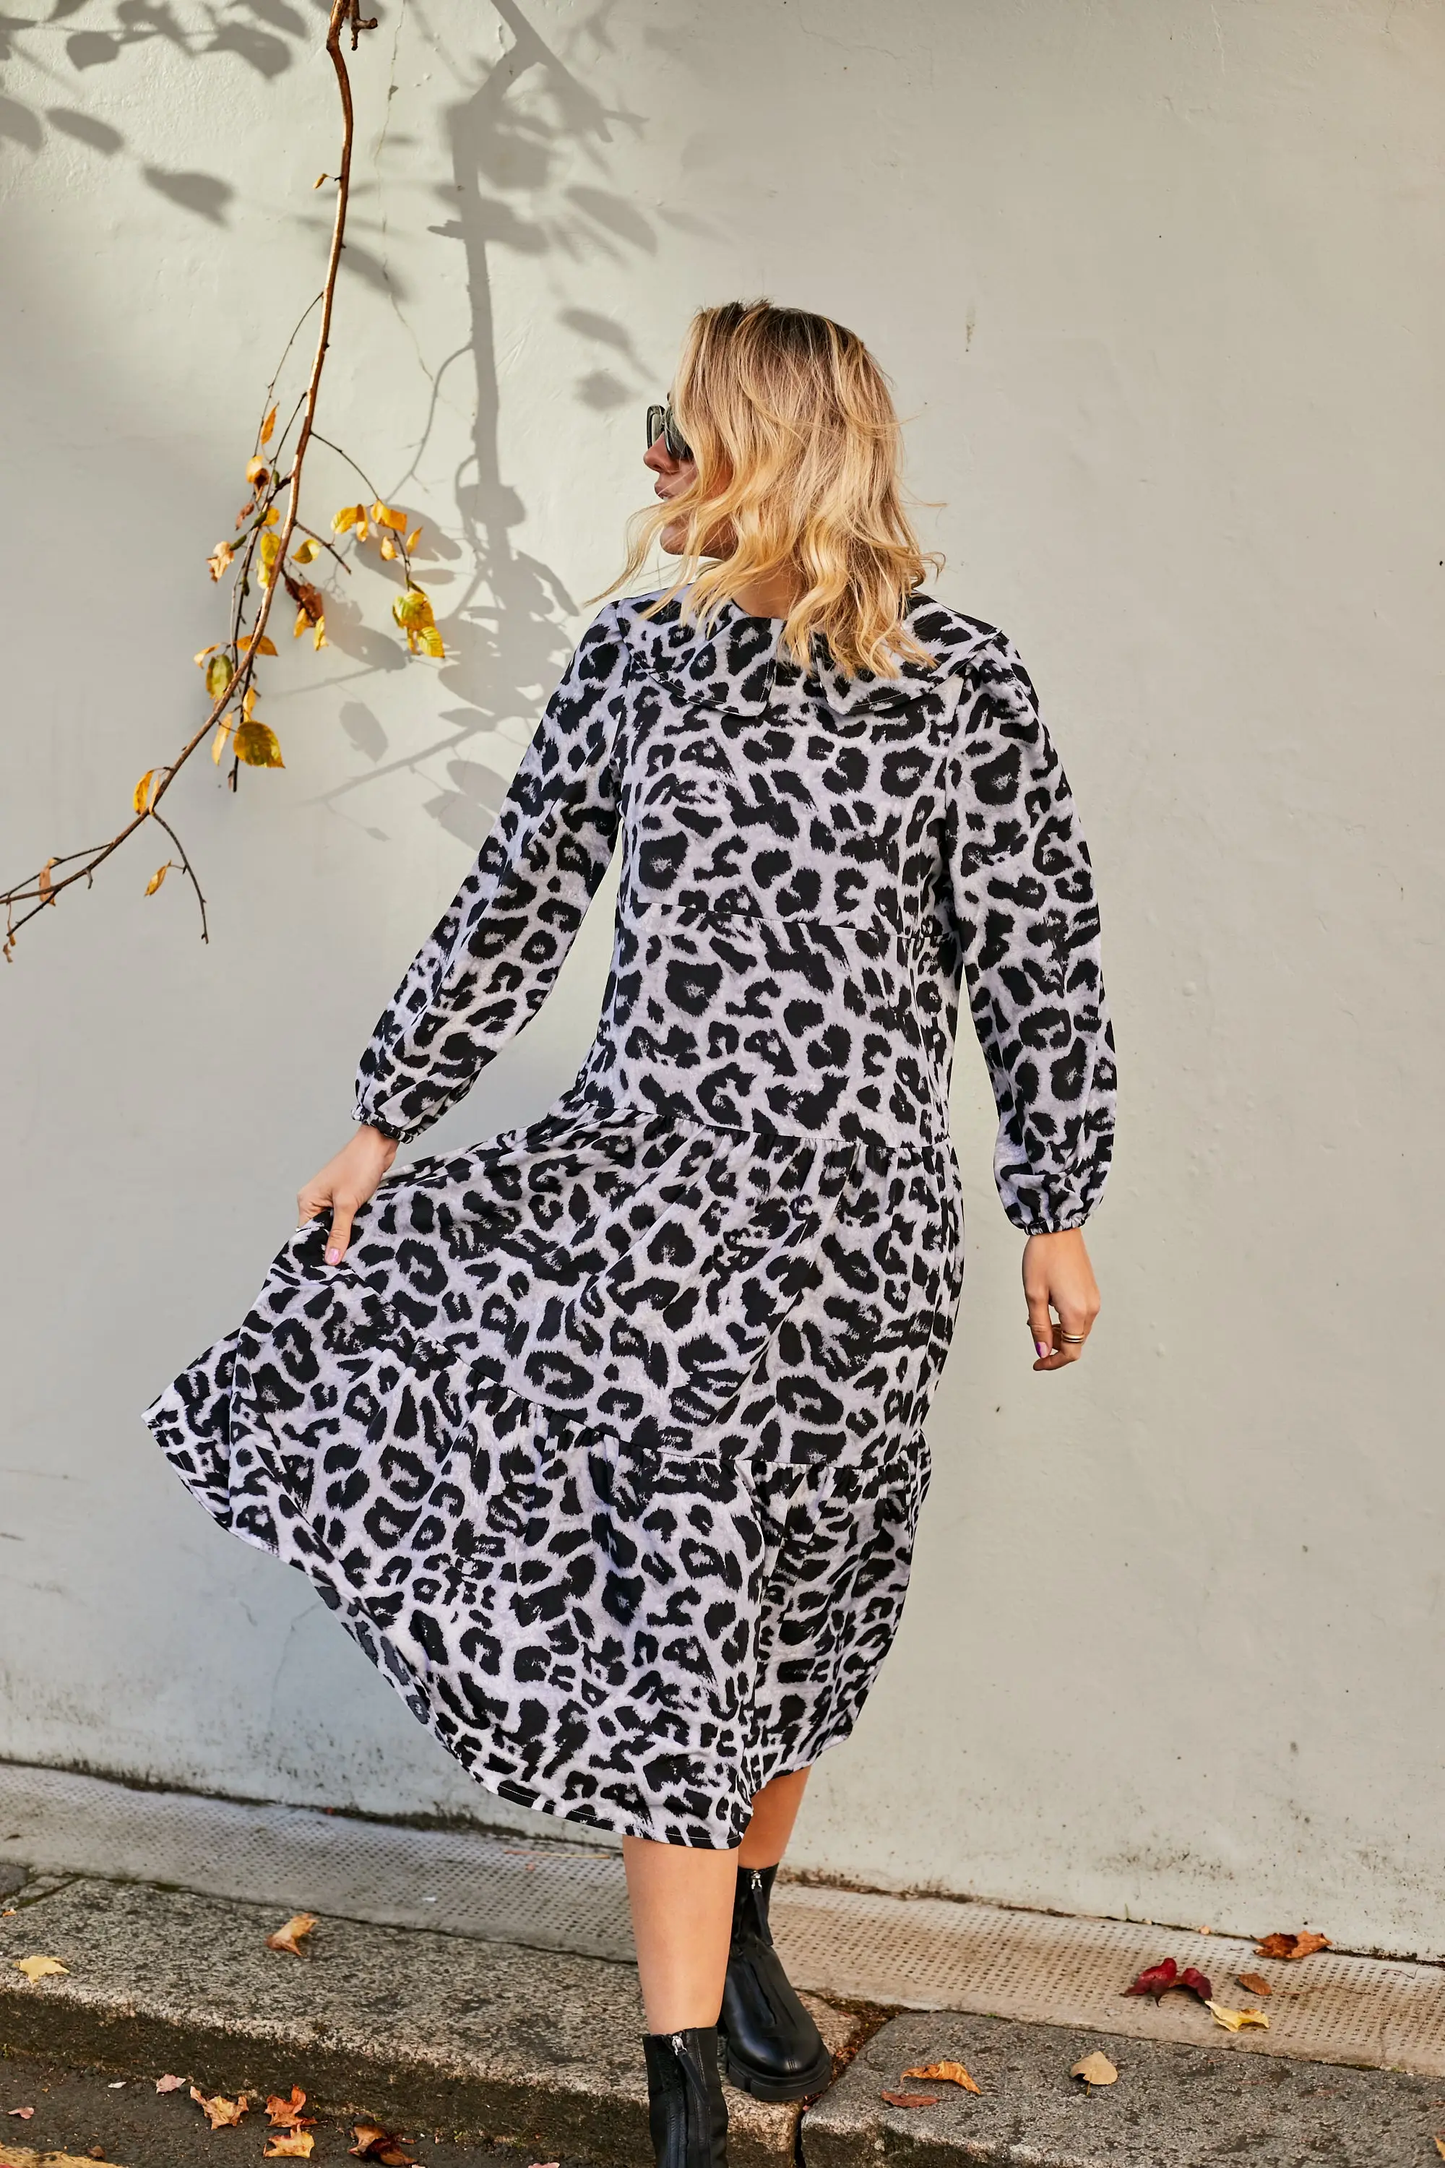 Lolly Leopard Dress in Grey  $12.00